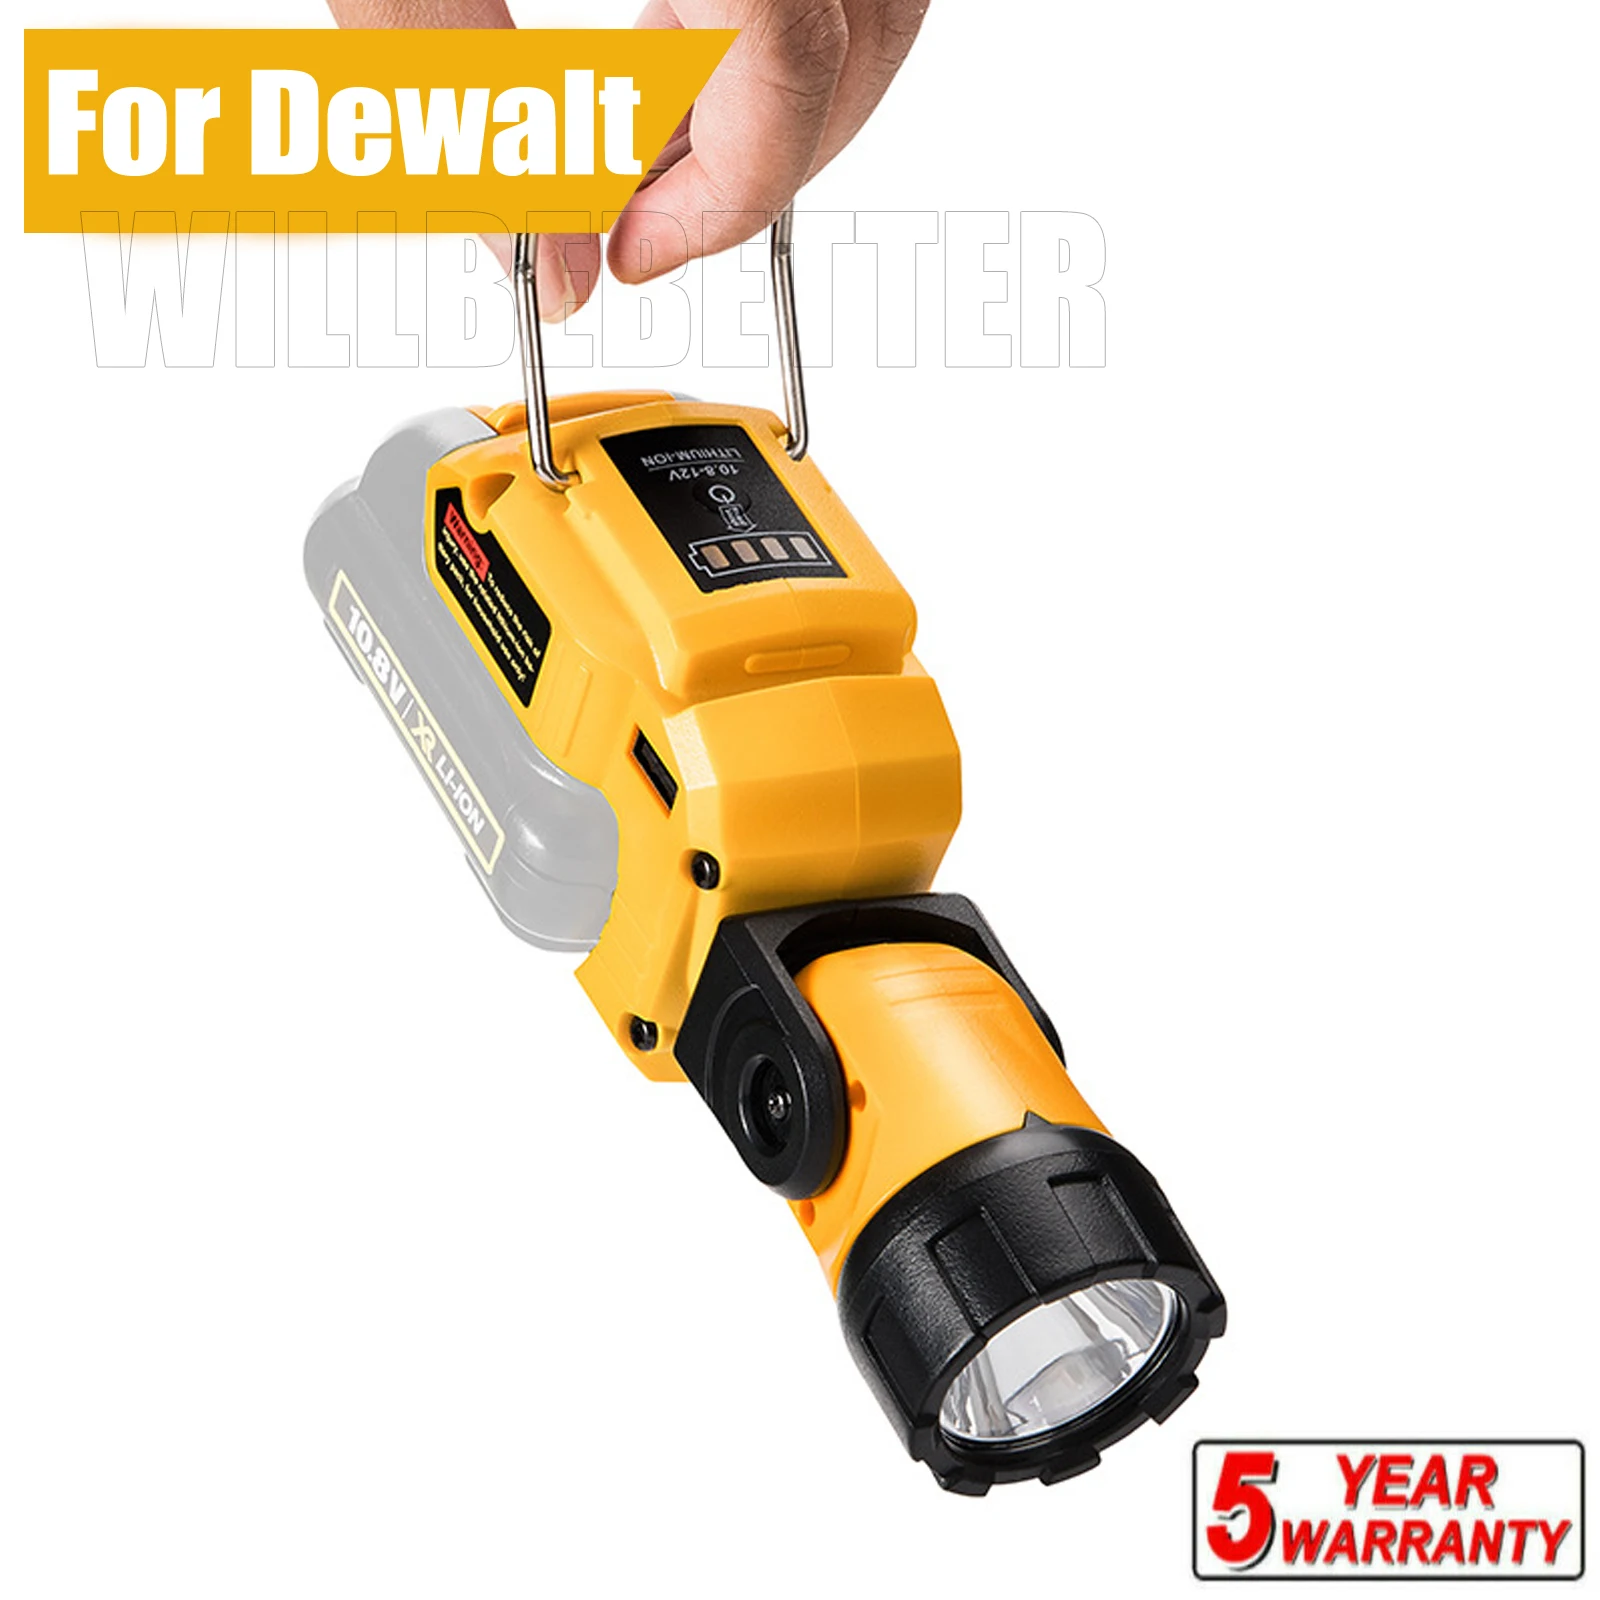 Portable Spotlight LED Warning Light Work Lamp Flashlight USB Charger for Dewalt DCB120 10.8V 12V Li-ion Battery Free shipping